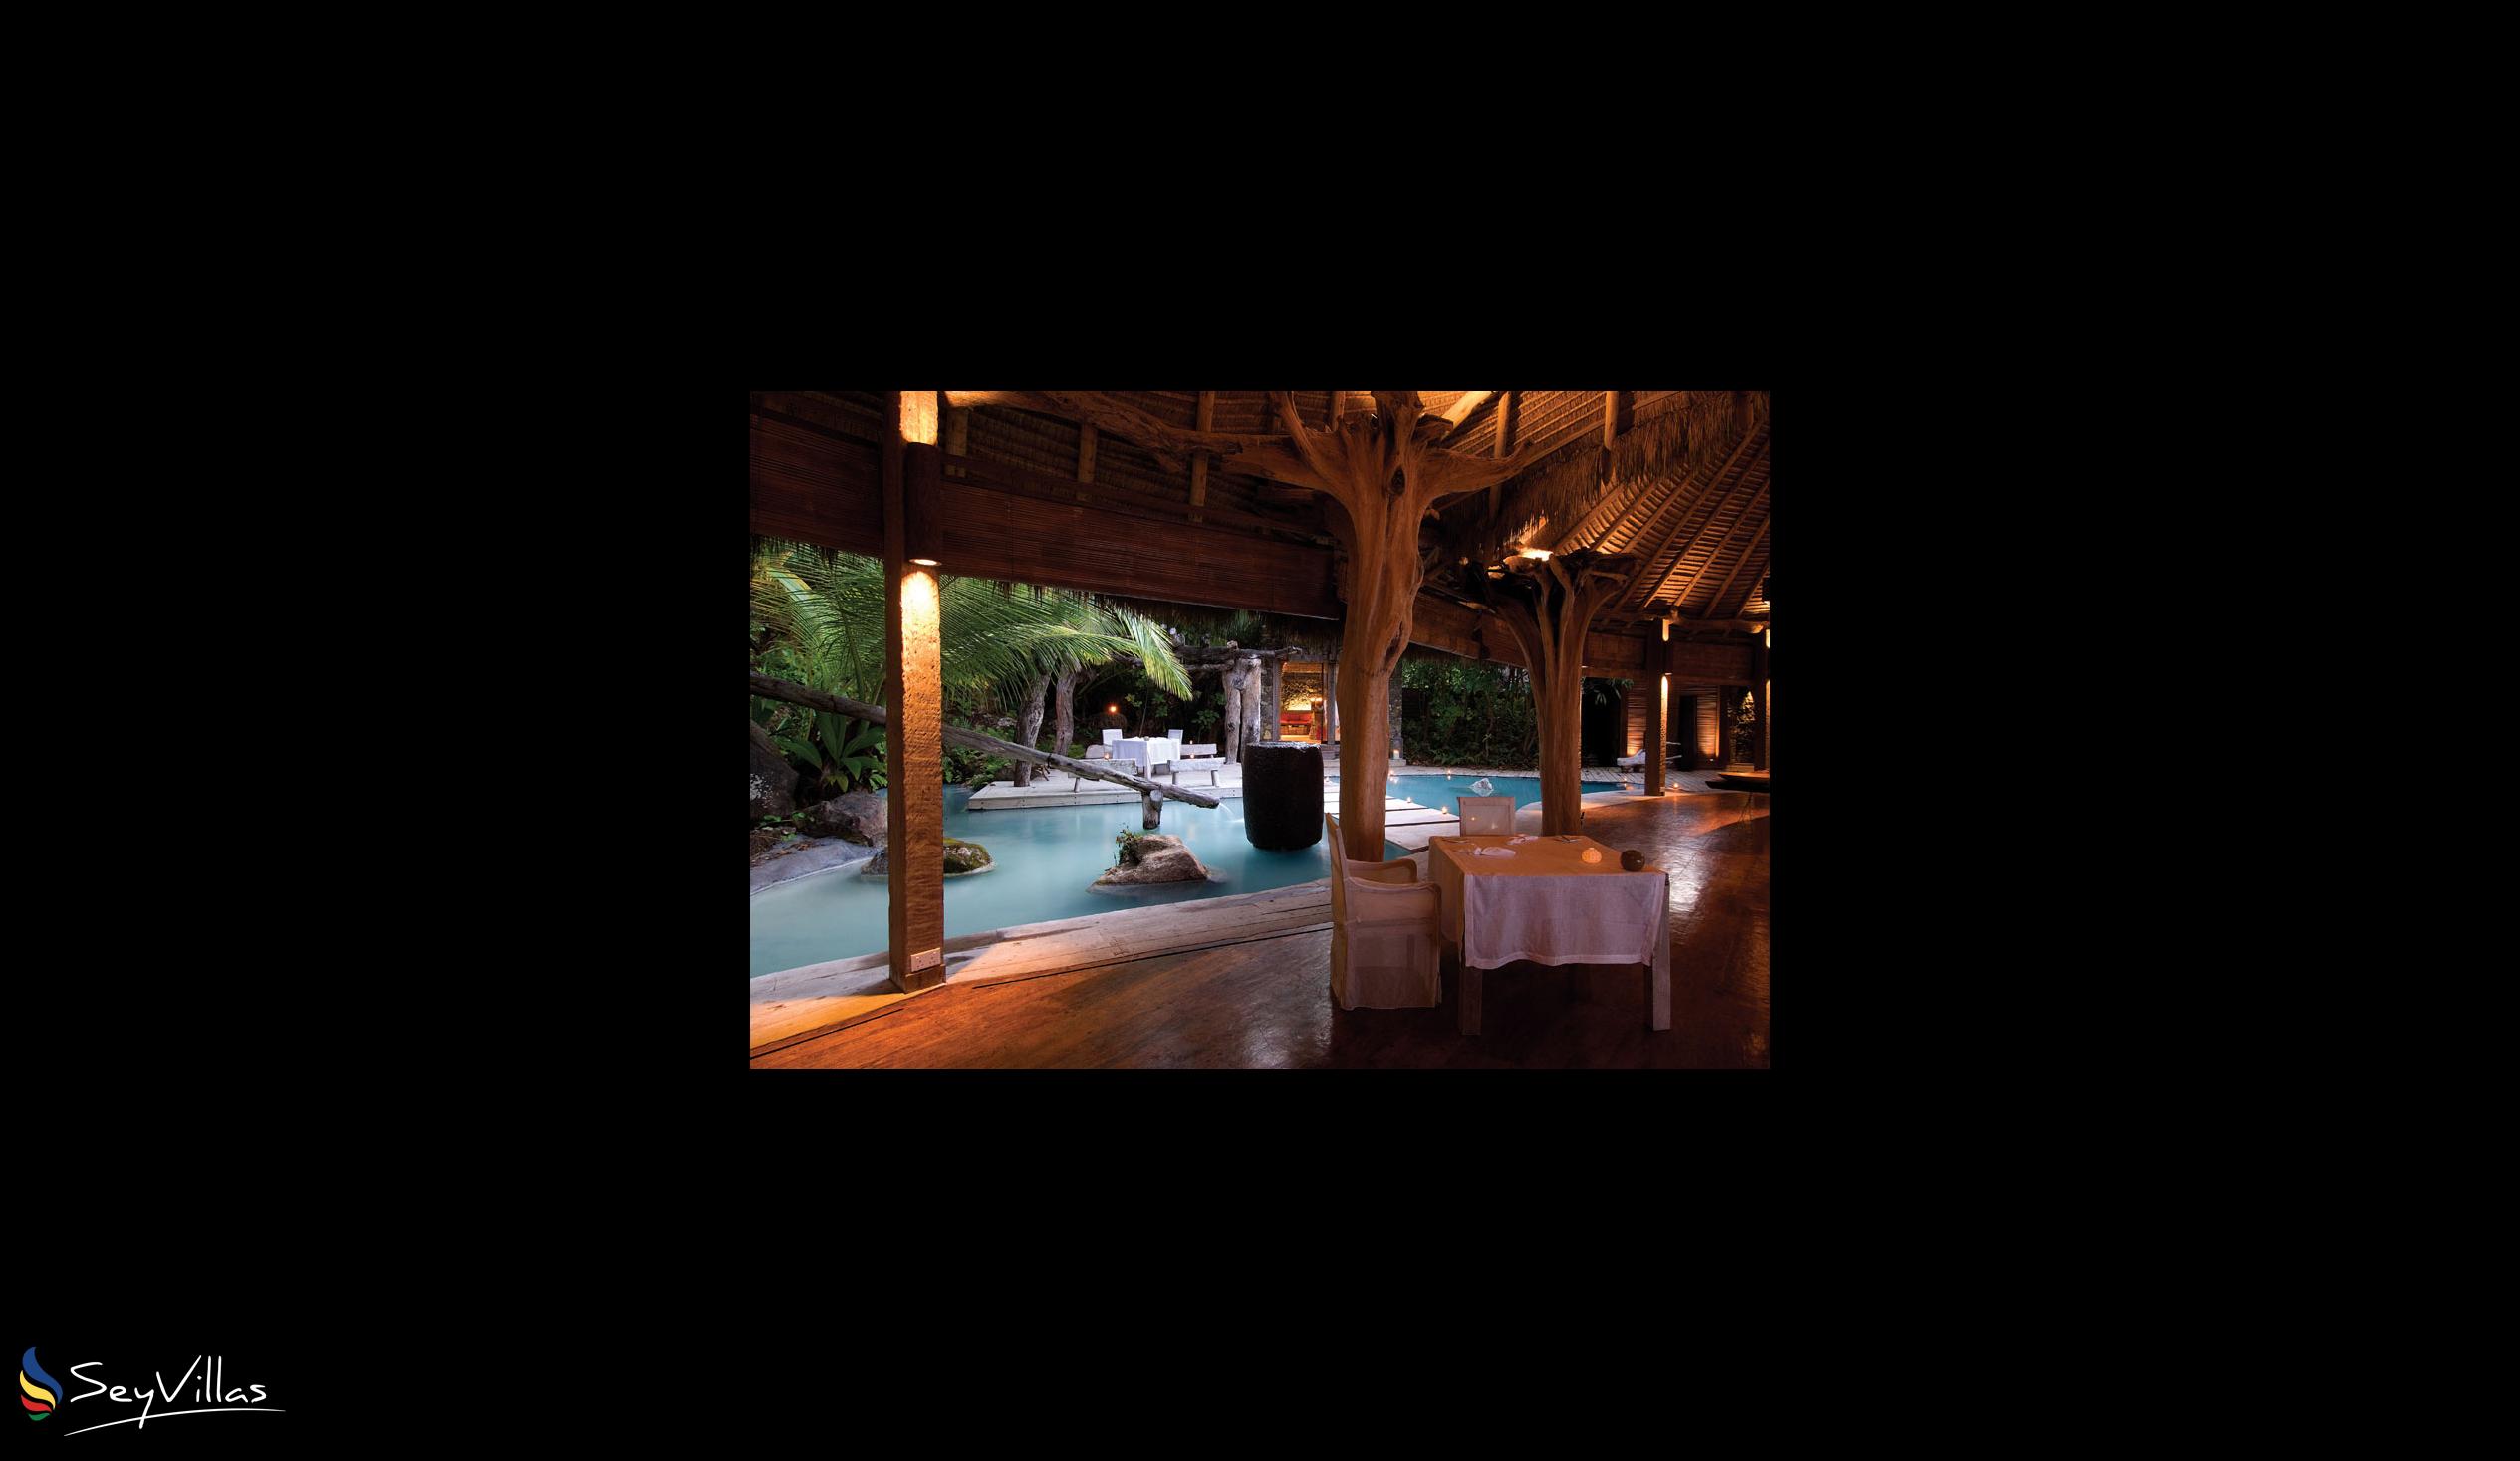 Photo 20: North Island Lodge - Indoor area - North Island (Seychelles)